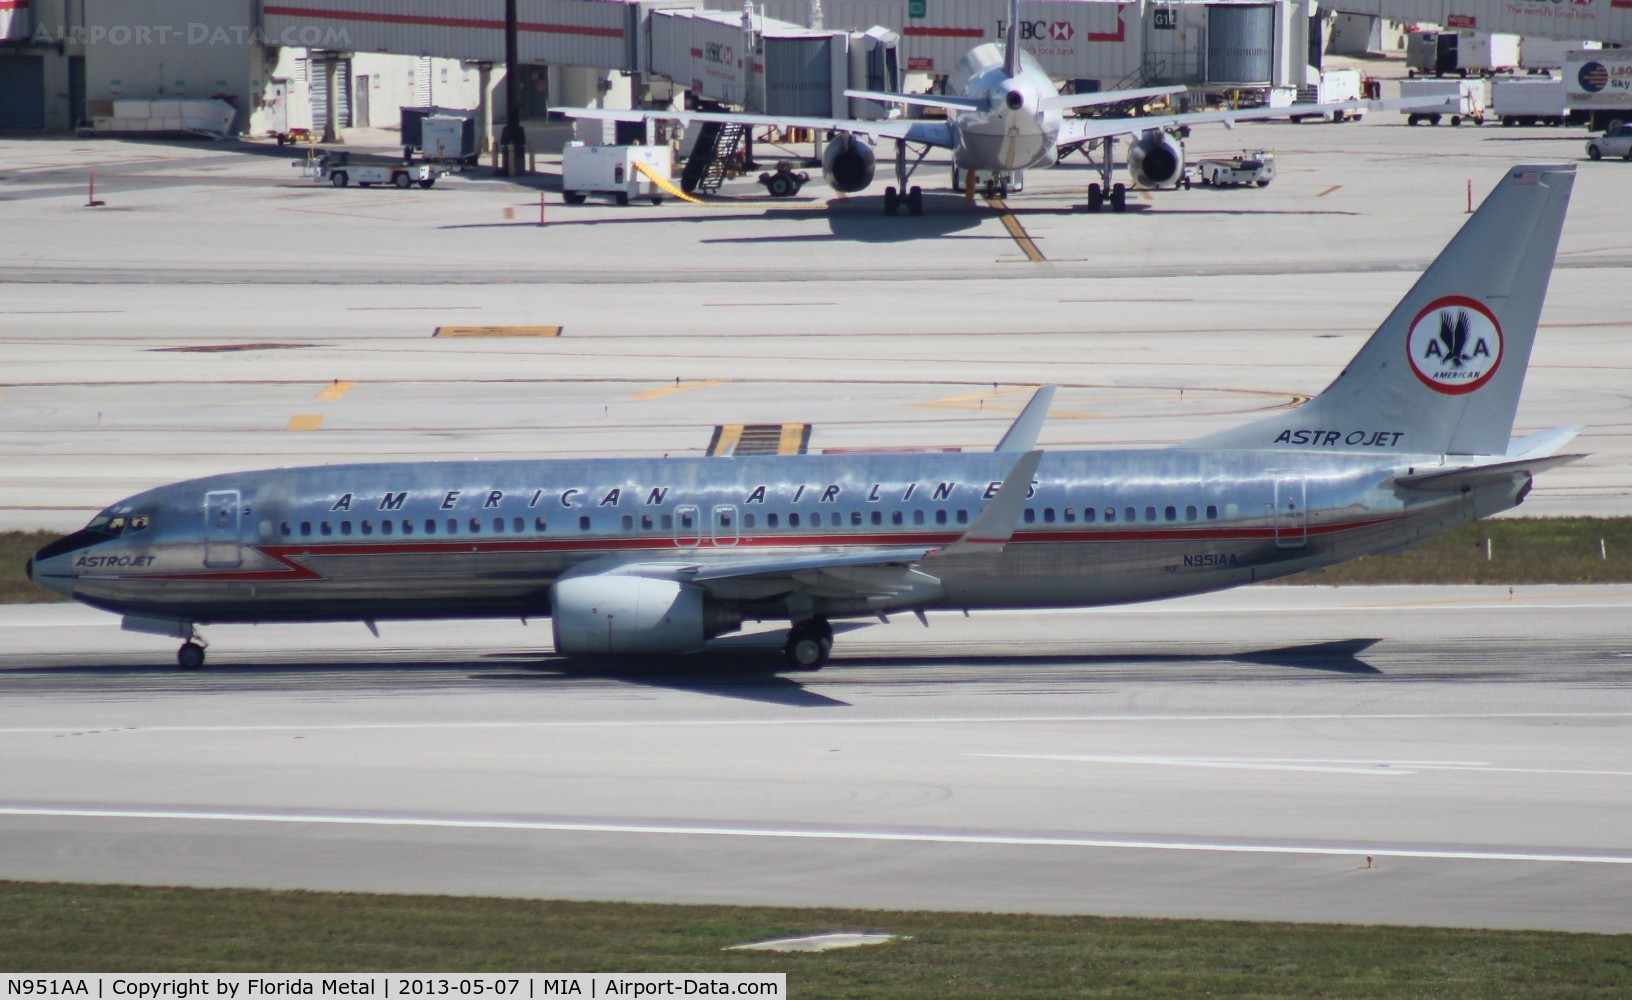 N951AA, 2000 Boeing 737-823 C/N 29538, American retro 737-800